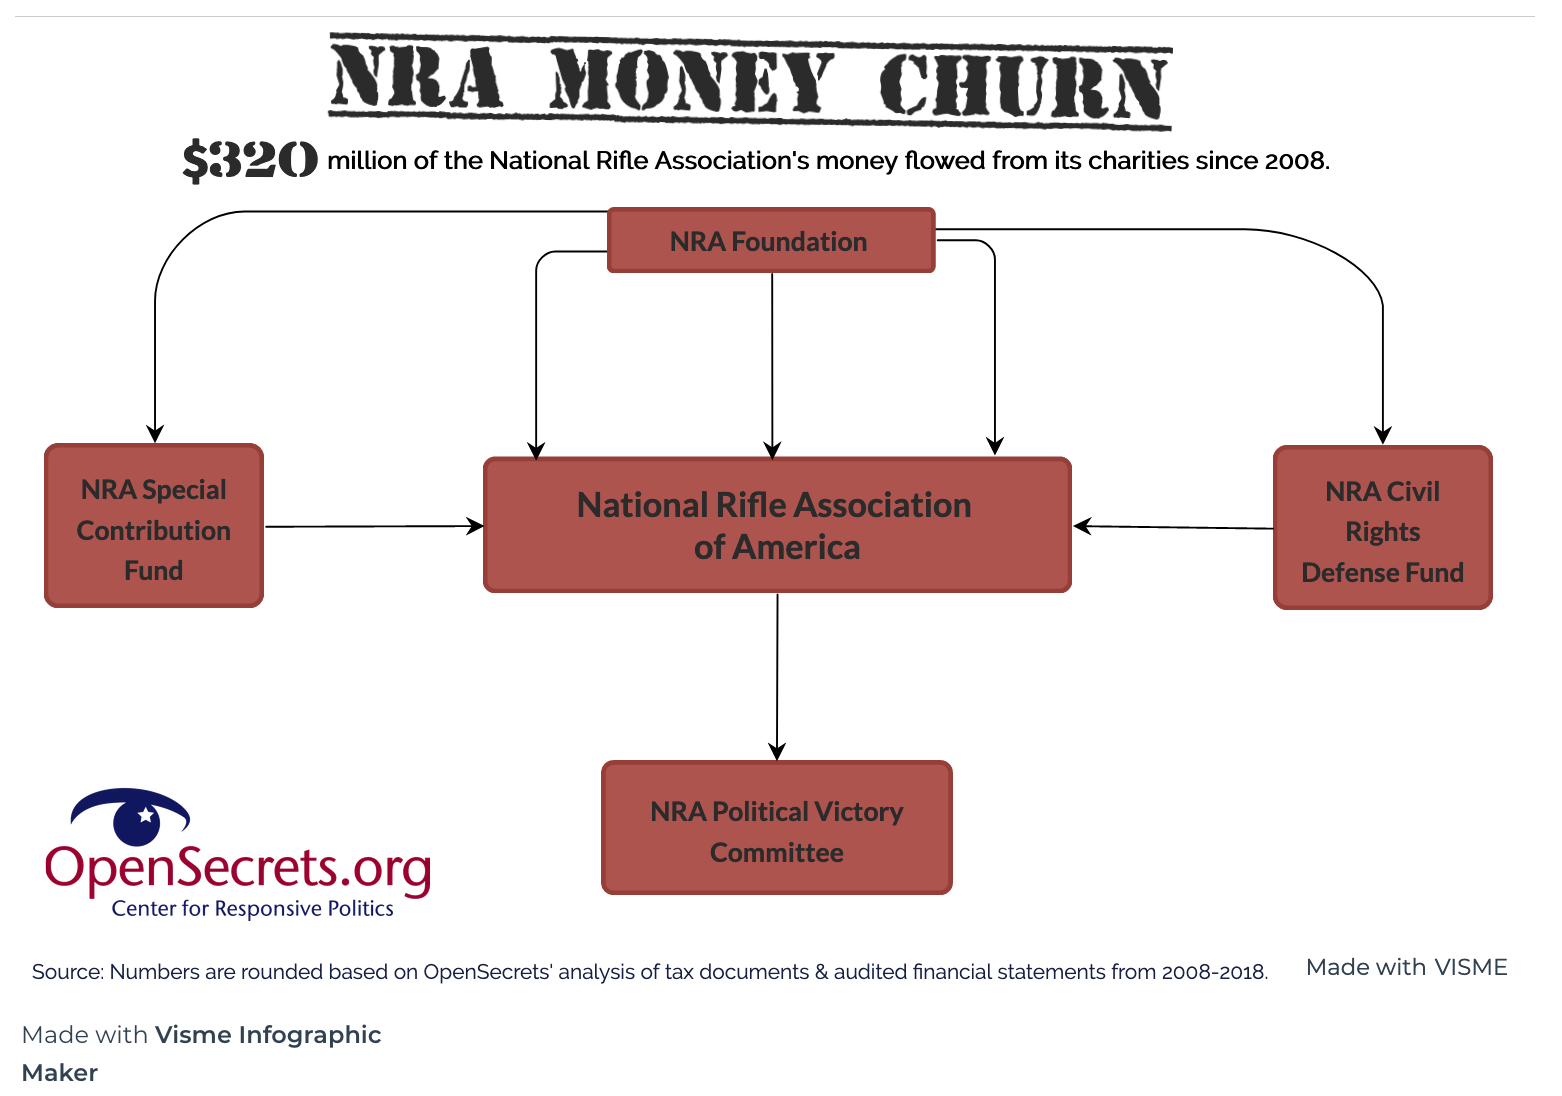 NRA Money Churn